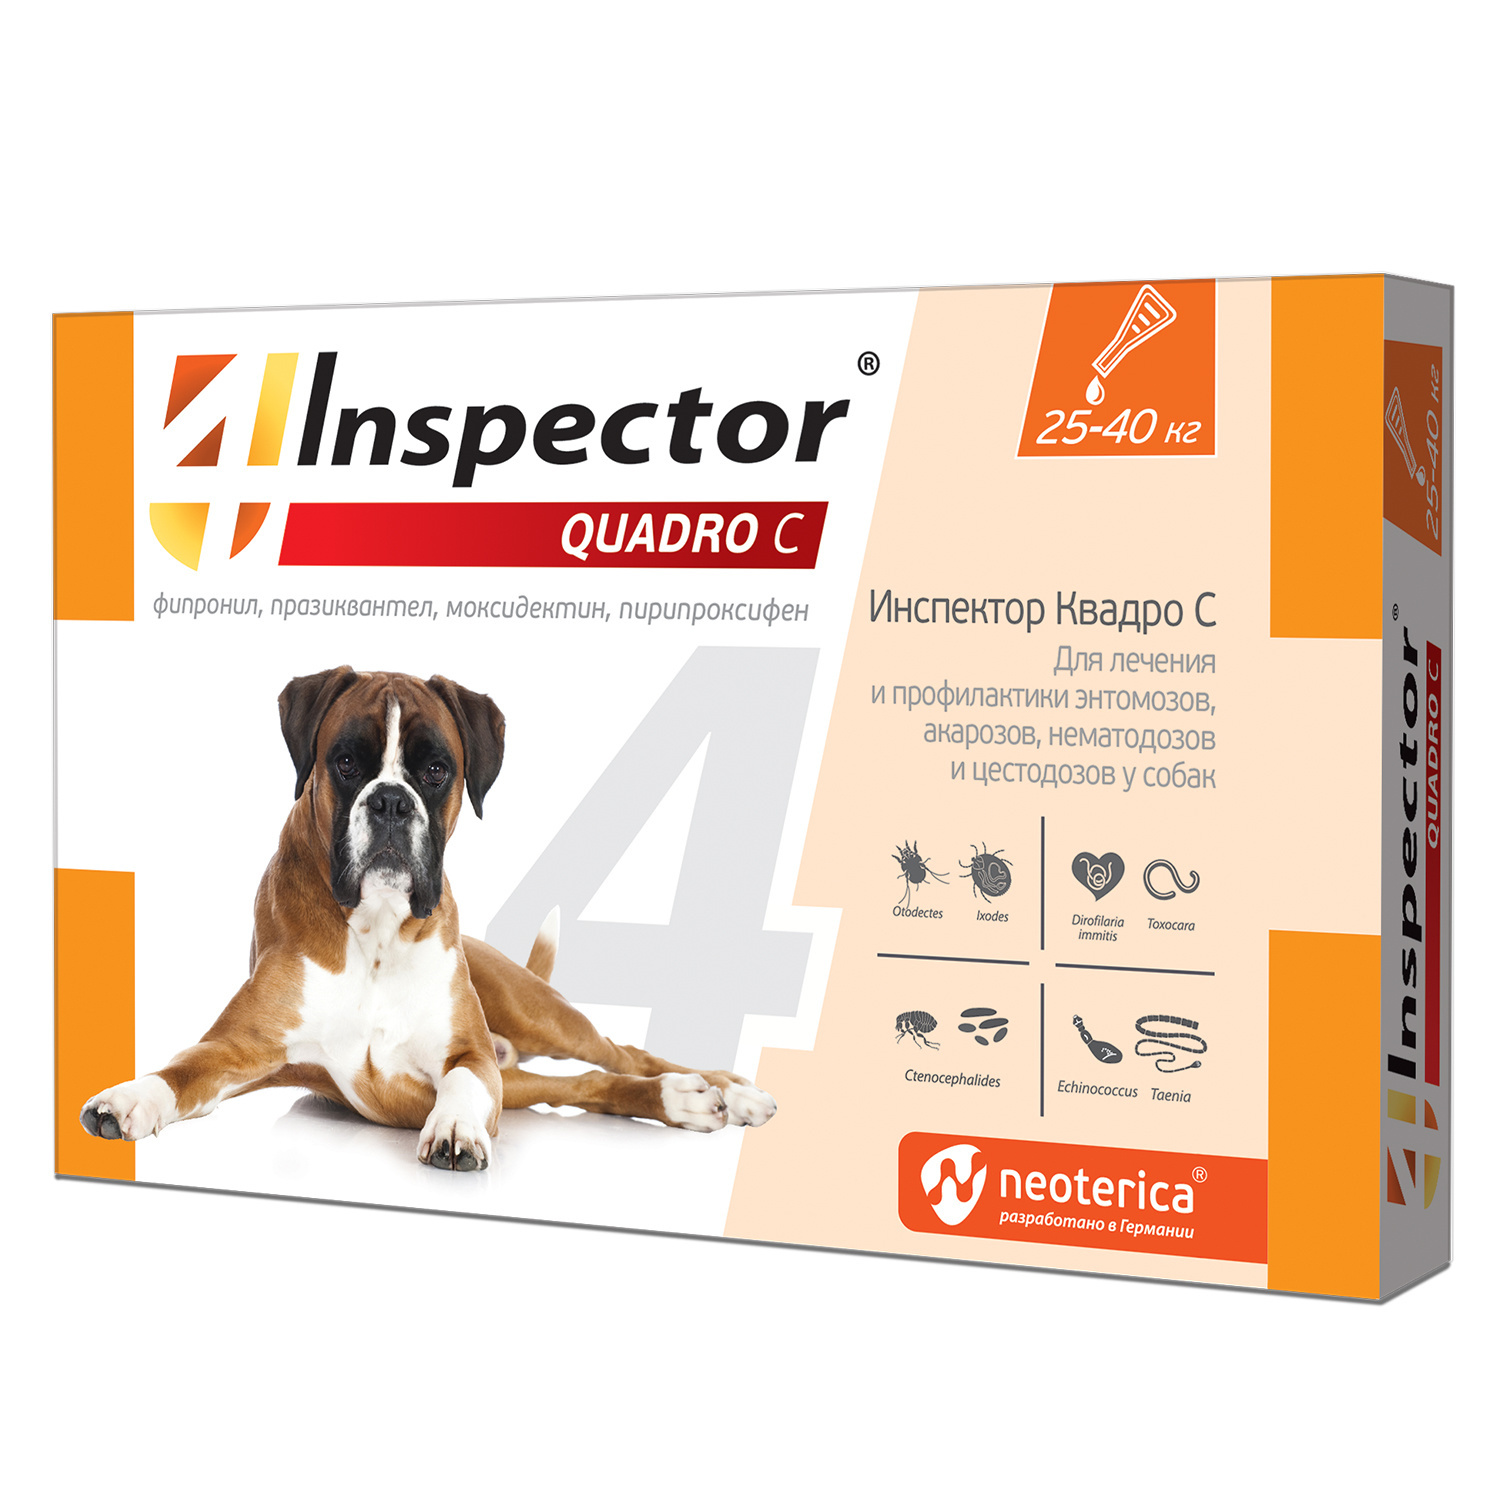 Inspector Inspector quadro капли на холку для собак 25-40 кг, от клещей, насекомых, глистов (24 г) алкотестер inspector at750